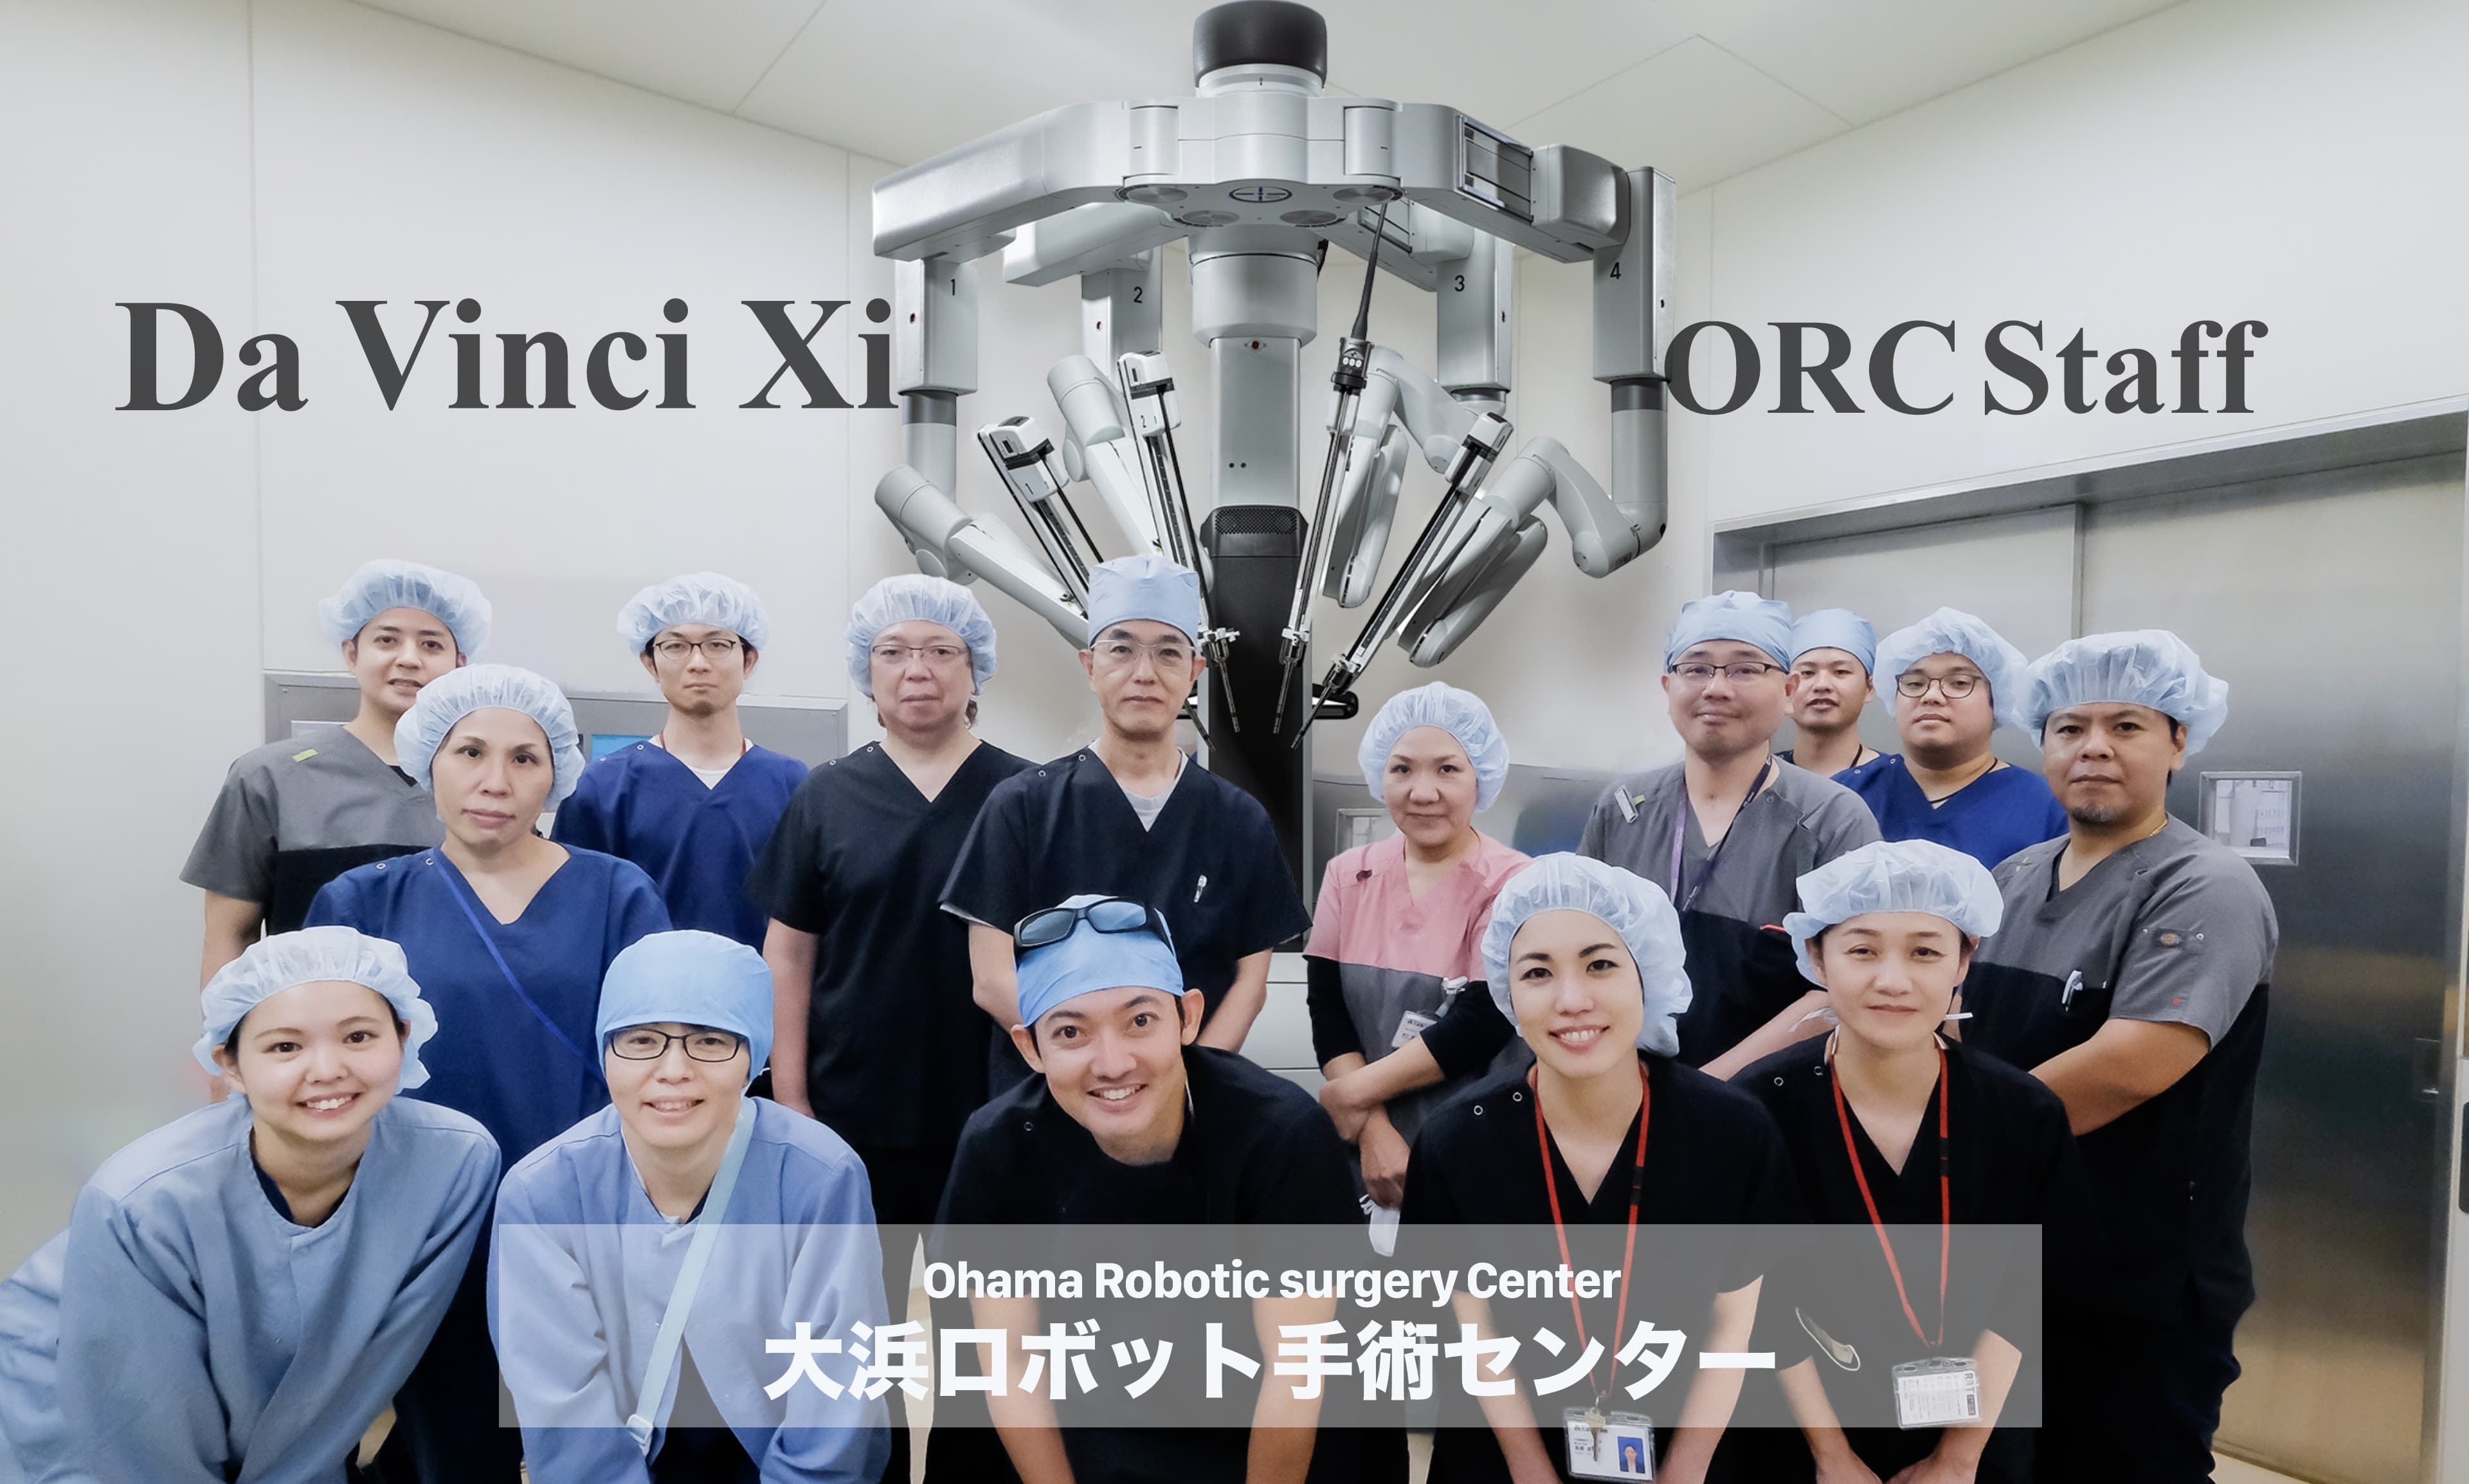 大浜ロボット手術センター | Ohama Robotic surgery Center